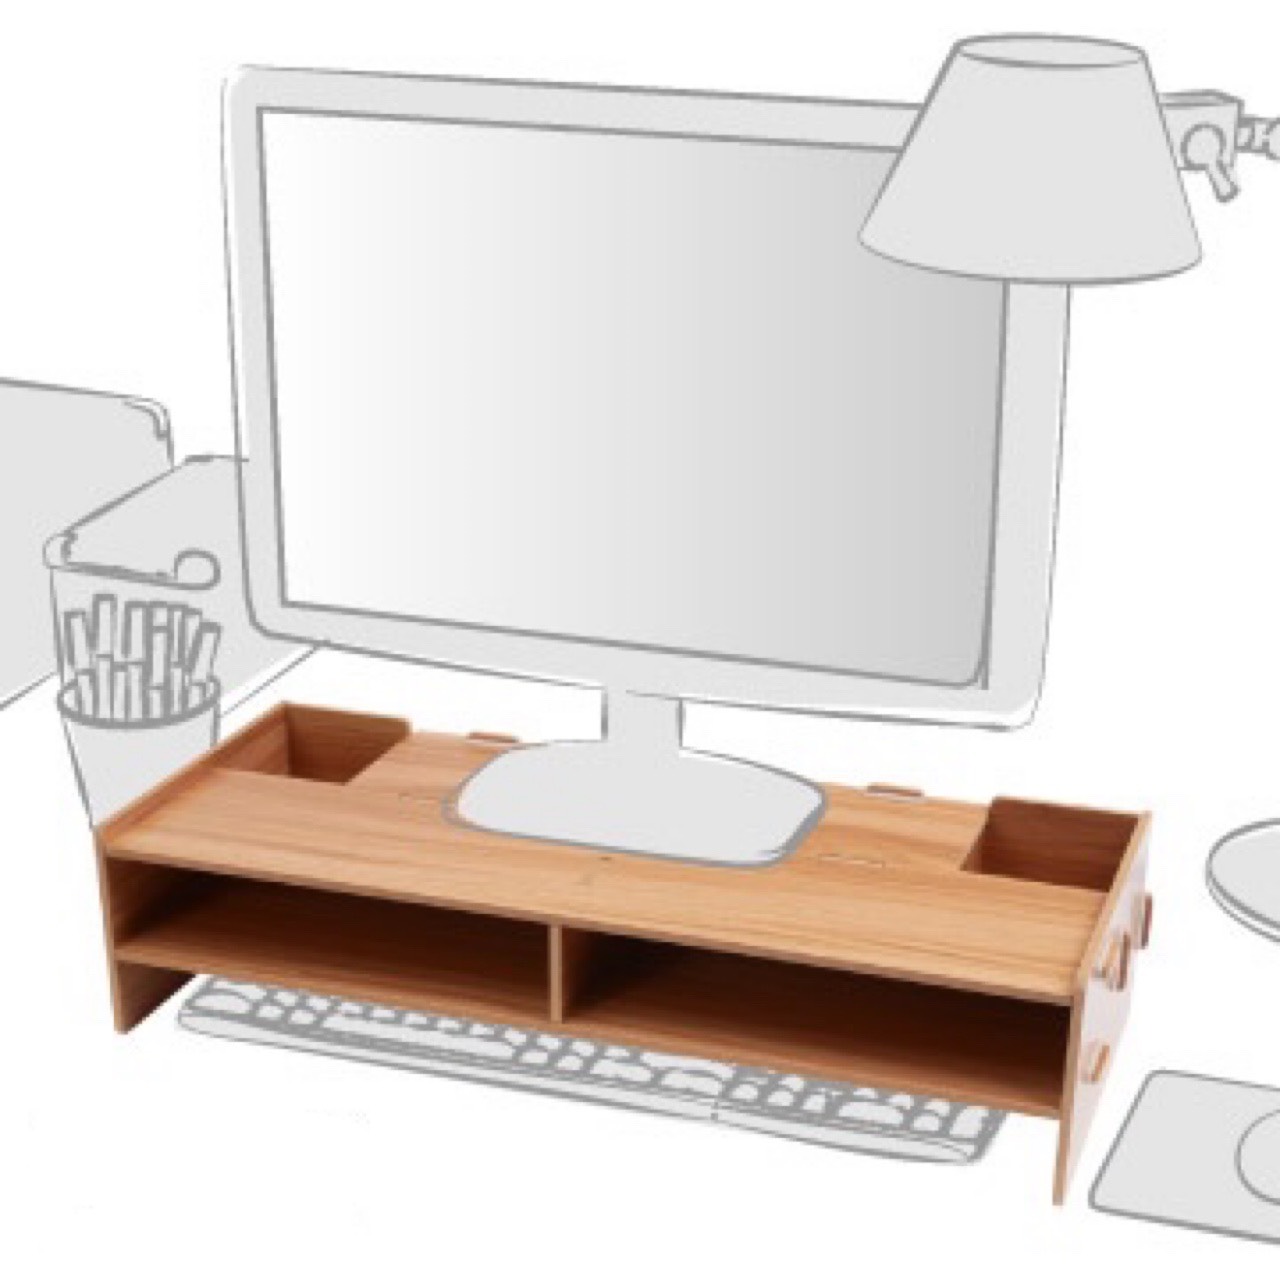 Kệ để màn hình máy tính laptop bằng gỗ kèm hộc cắm viết - kệ máy tính để bàn - kệ laptop để bàn - kệ hồ sơ để bàn